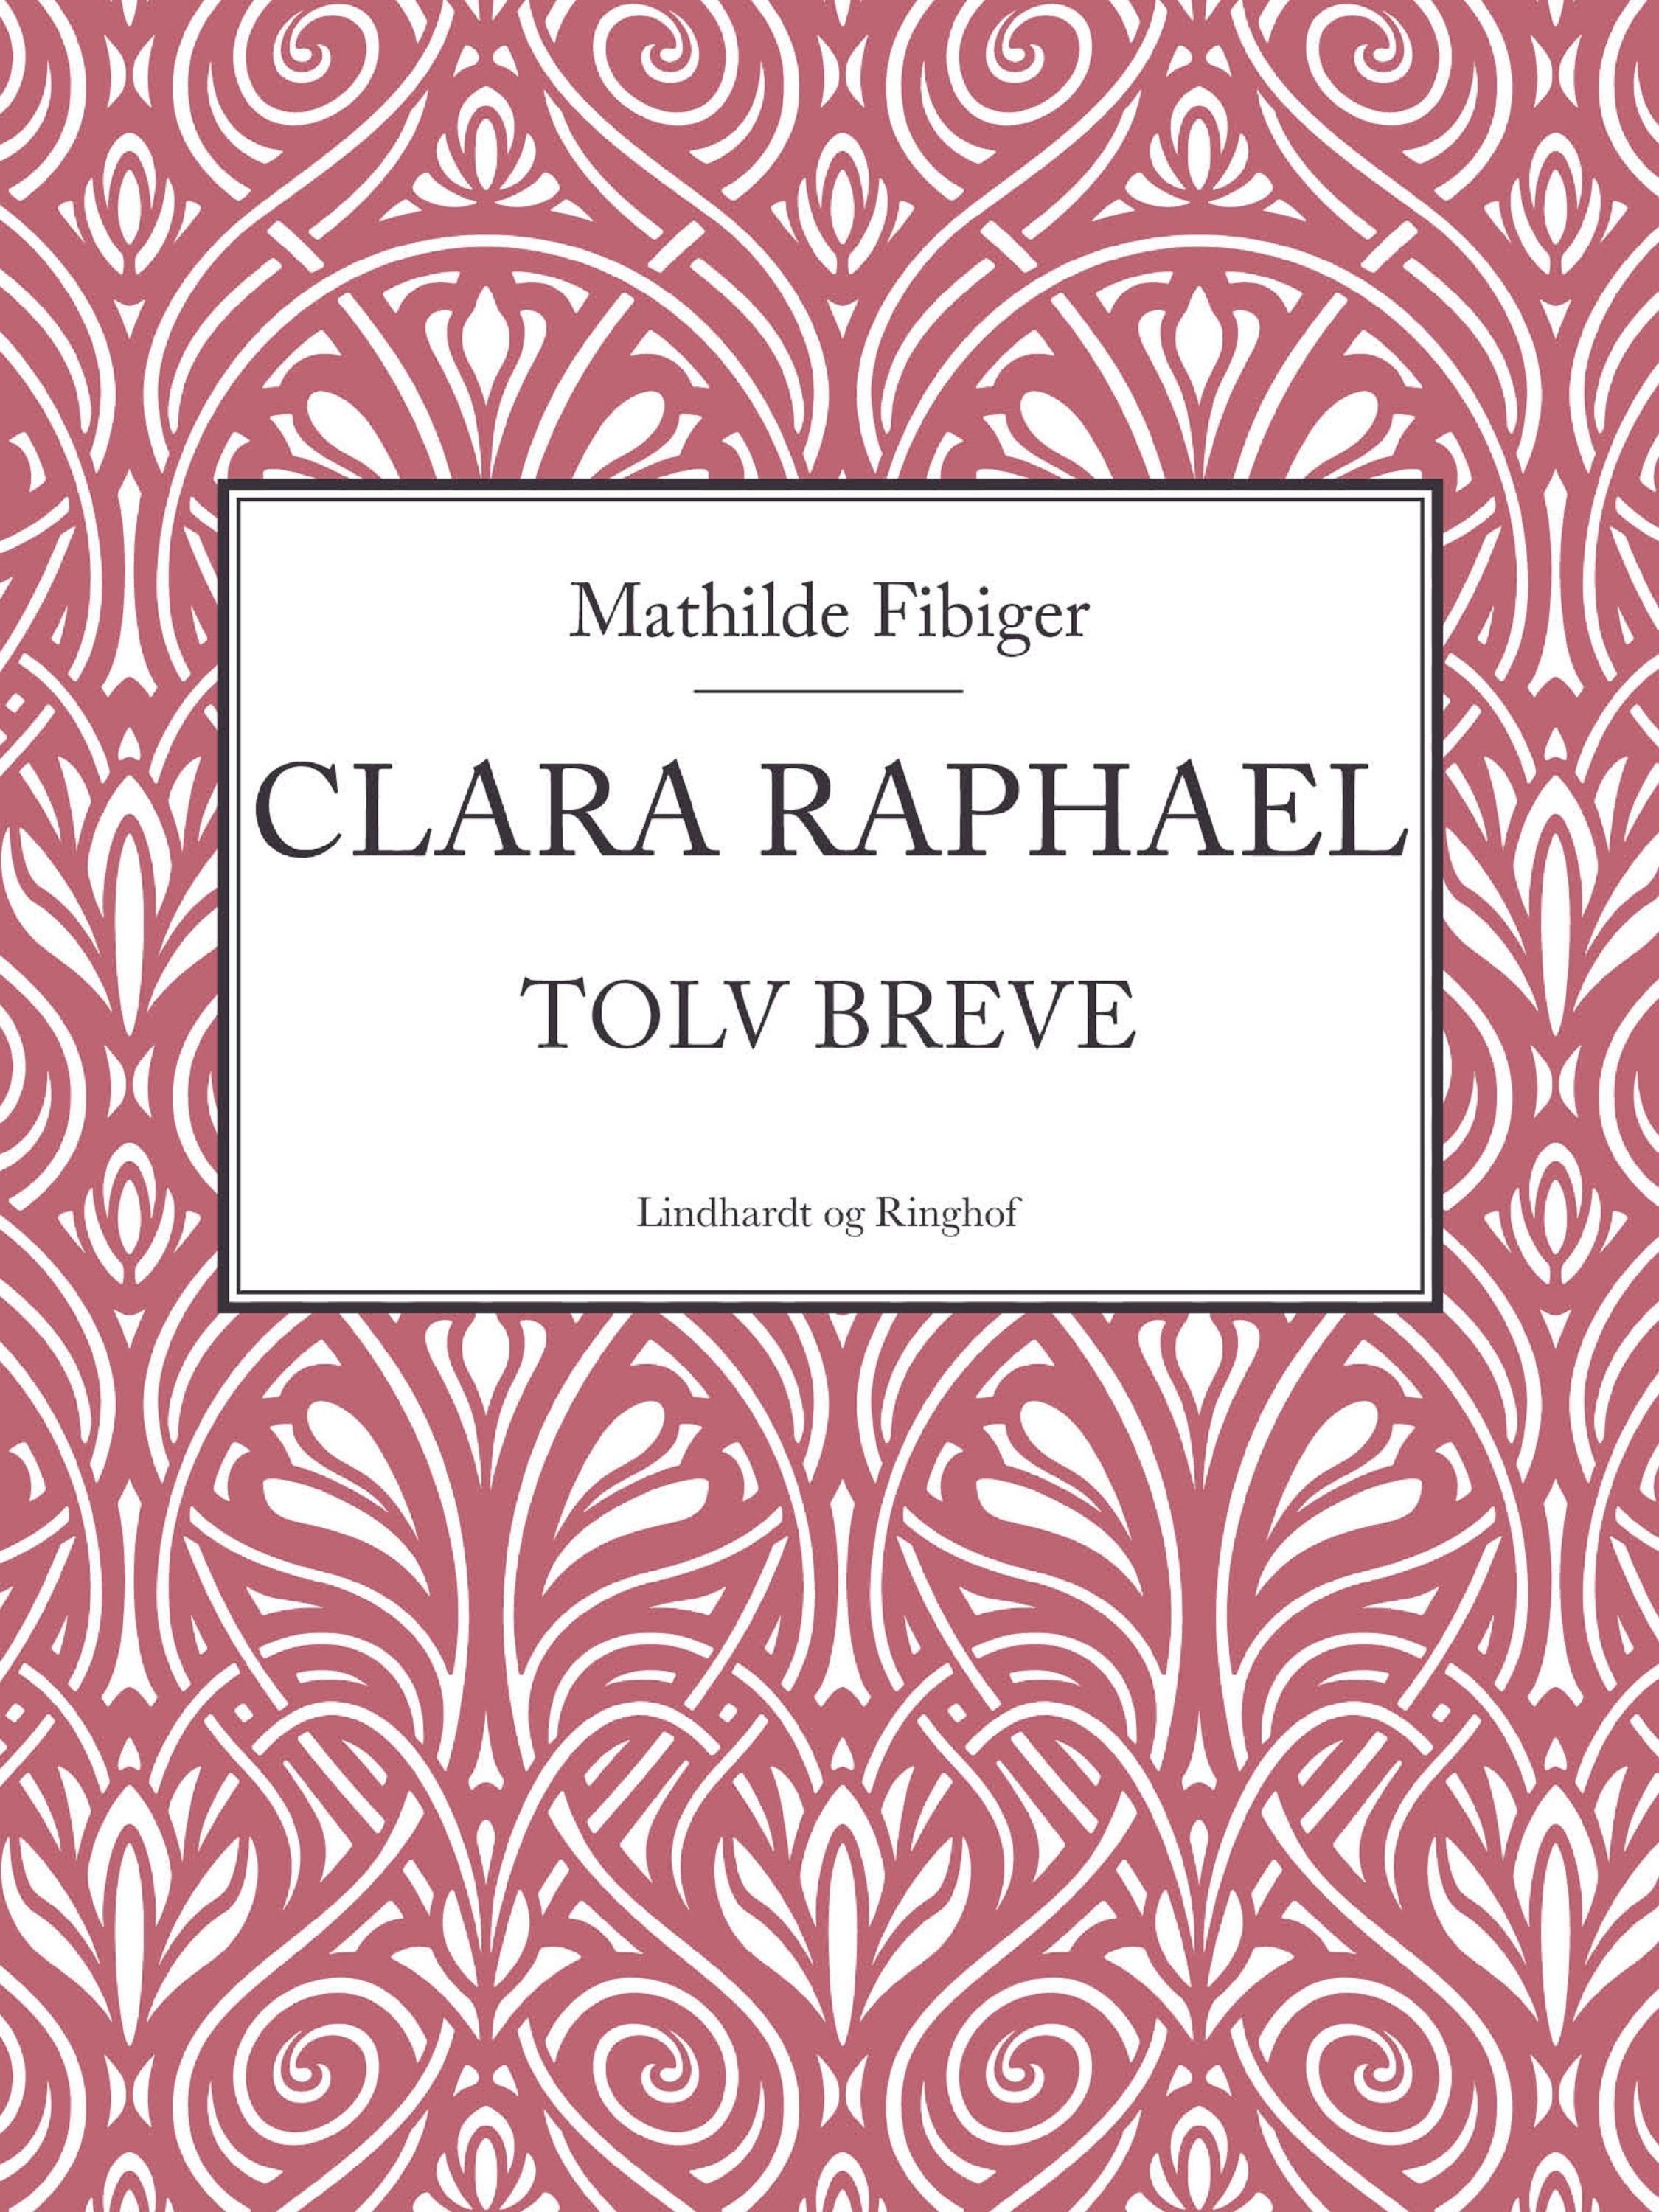 Clara Raphael, ljudbok av Mathilde Fibiger